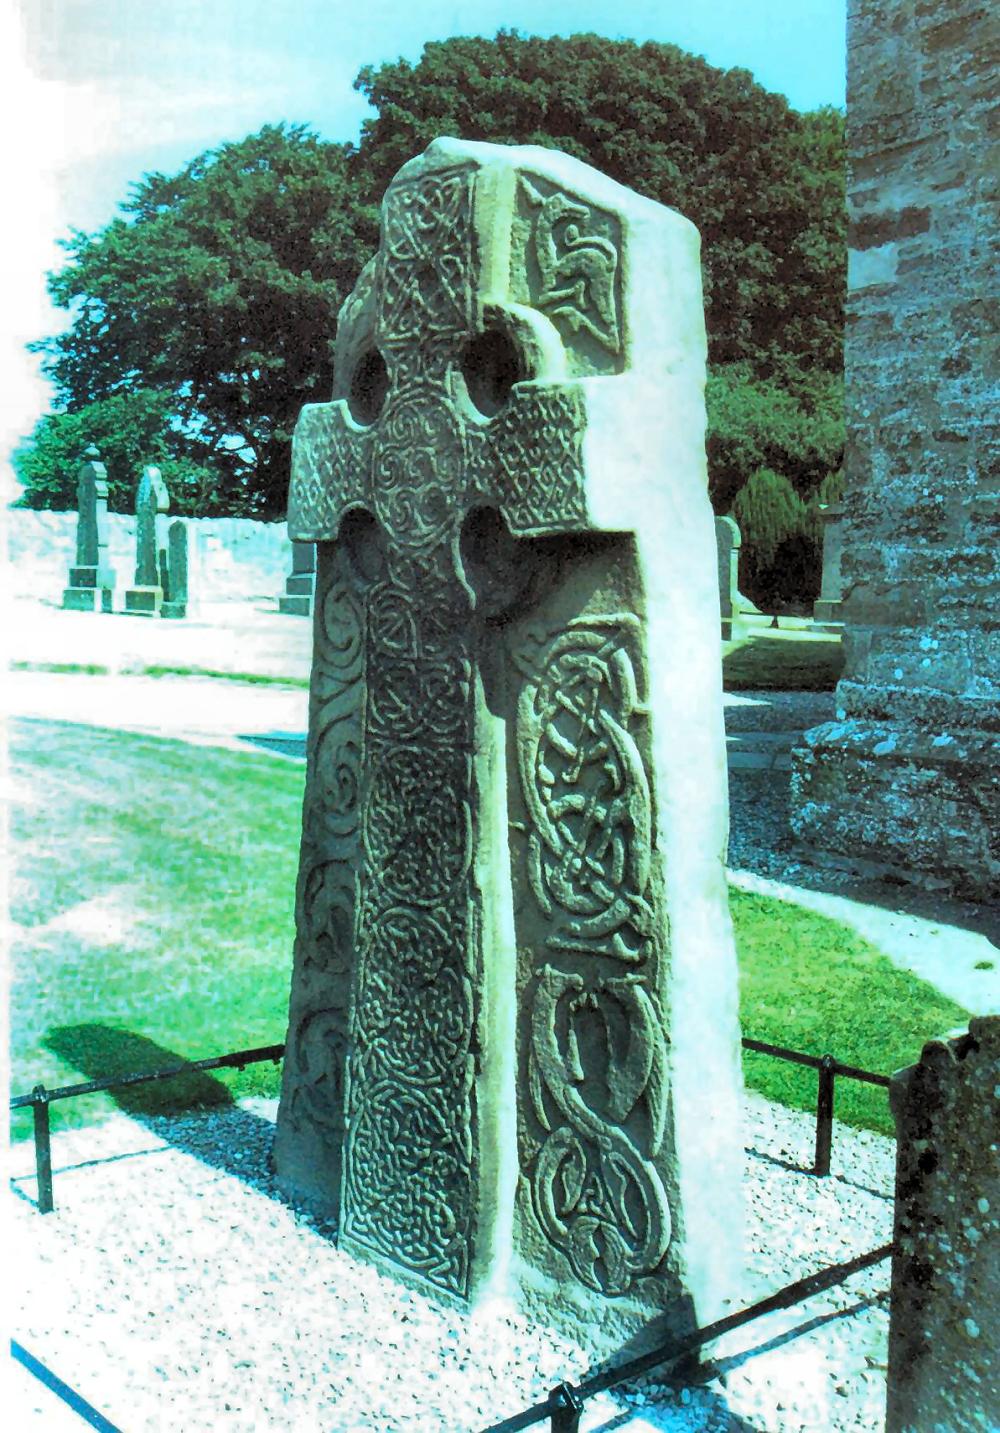 ABERLEMNÓI KERESZT 210 cm magas 8. Század Írországban a keresztény misszionáriusok által felállított sírkövek szalagfonatos ornamentikával díszítettek. 8. Században alakult ki a fonadékokból és spirálvonalakból képzett áttört mintájú kelta kereszt.